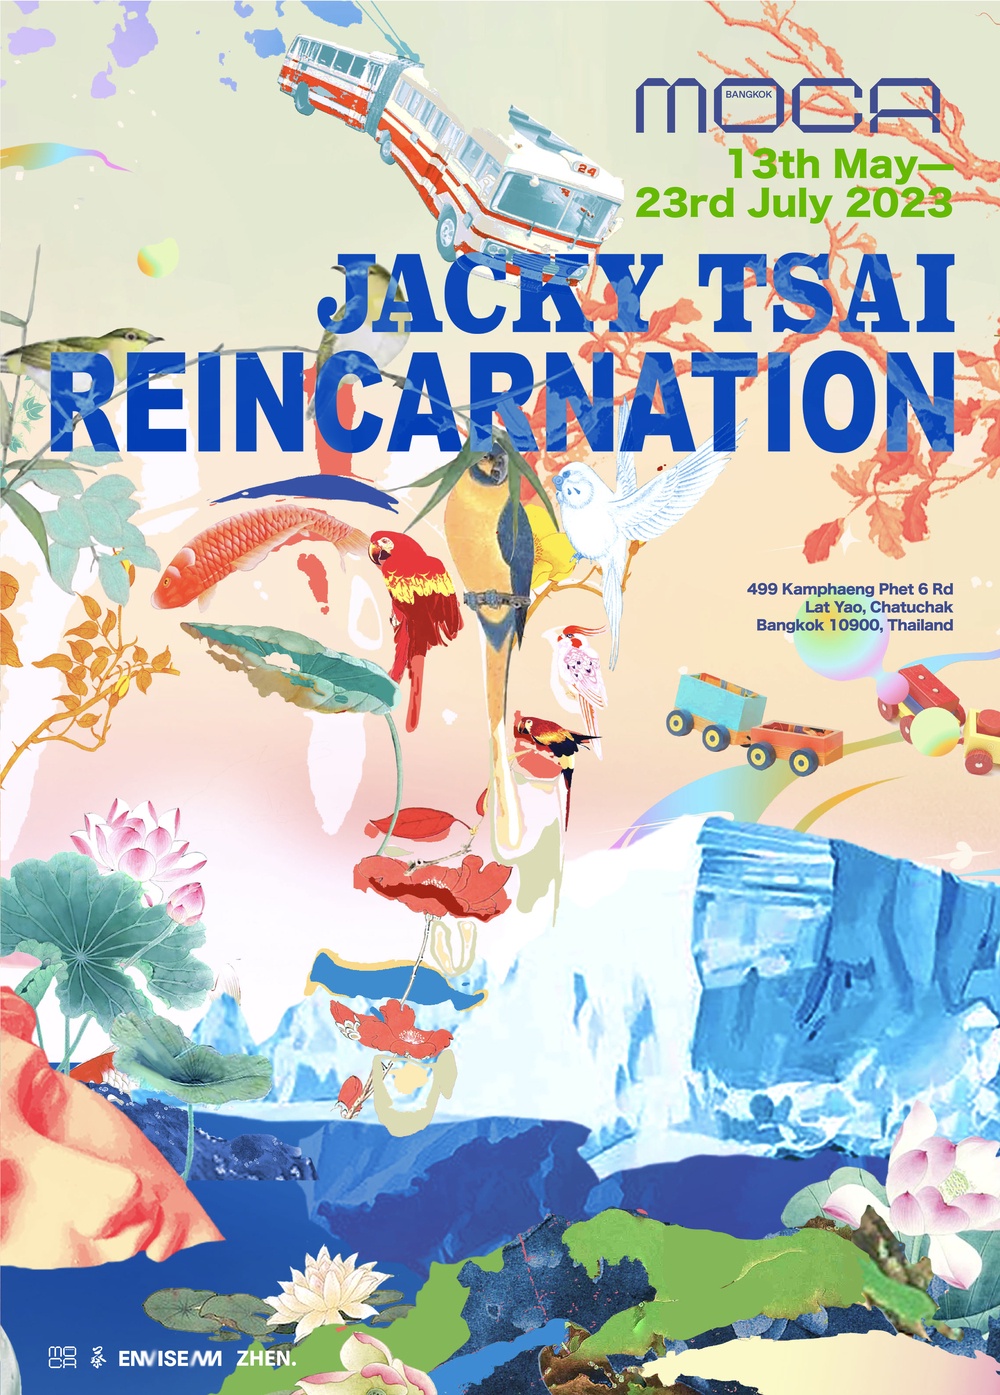 นิทรรศการ Reincarnation โดย Jacky Tsai ศิลปินชาวจีนผู้โด่งดัง โชว์เดี่ยวผลงานครั้งแรก ณ พิพิธภัณฑ์ศิลปะไทยร่วมสมัย MOCA BANGKOK เริ่มวันนี้ ถึง 23 กรกฎาคม